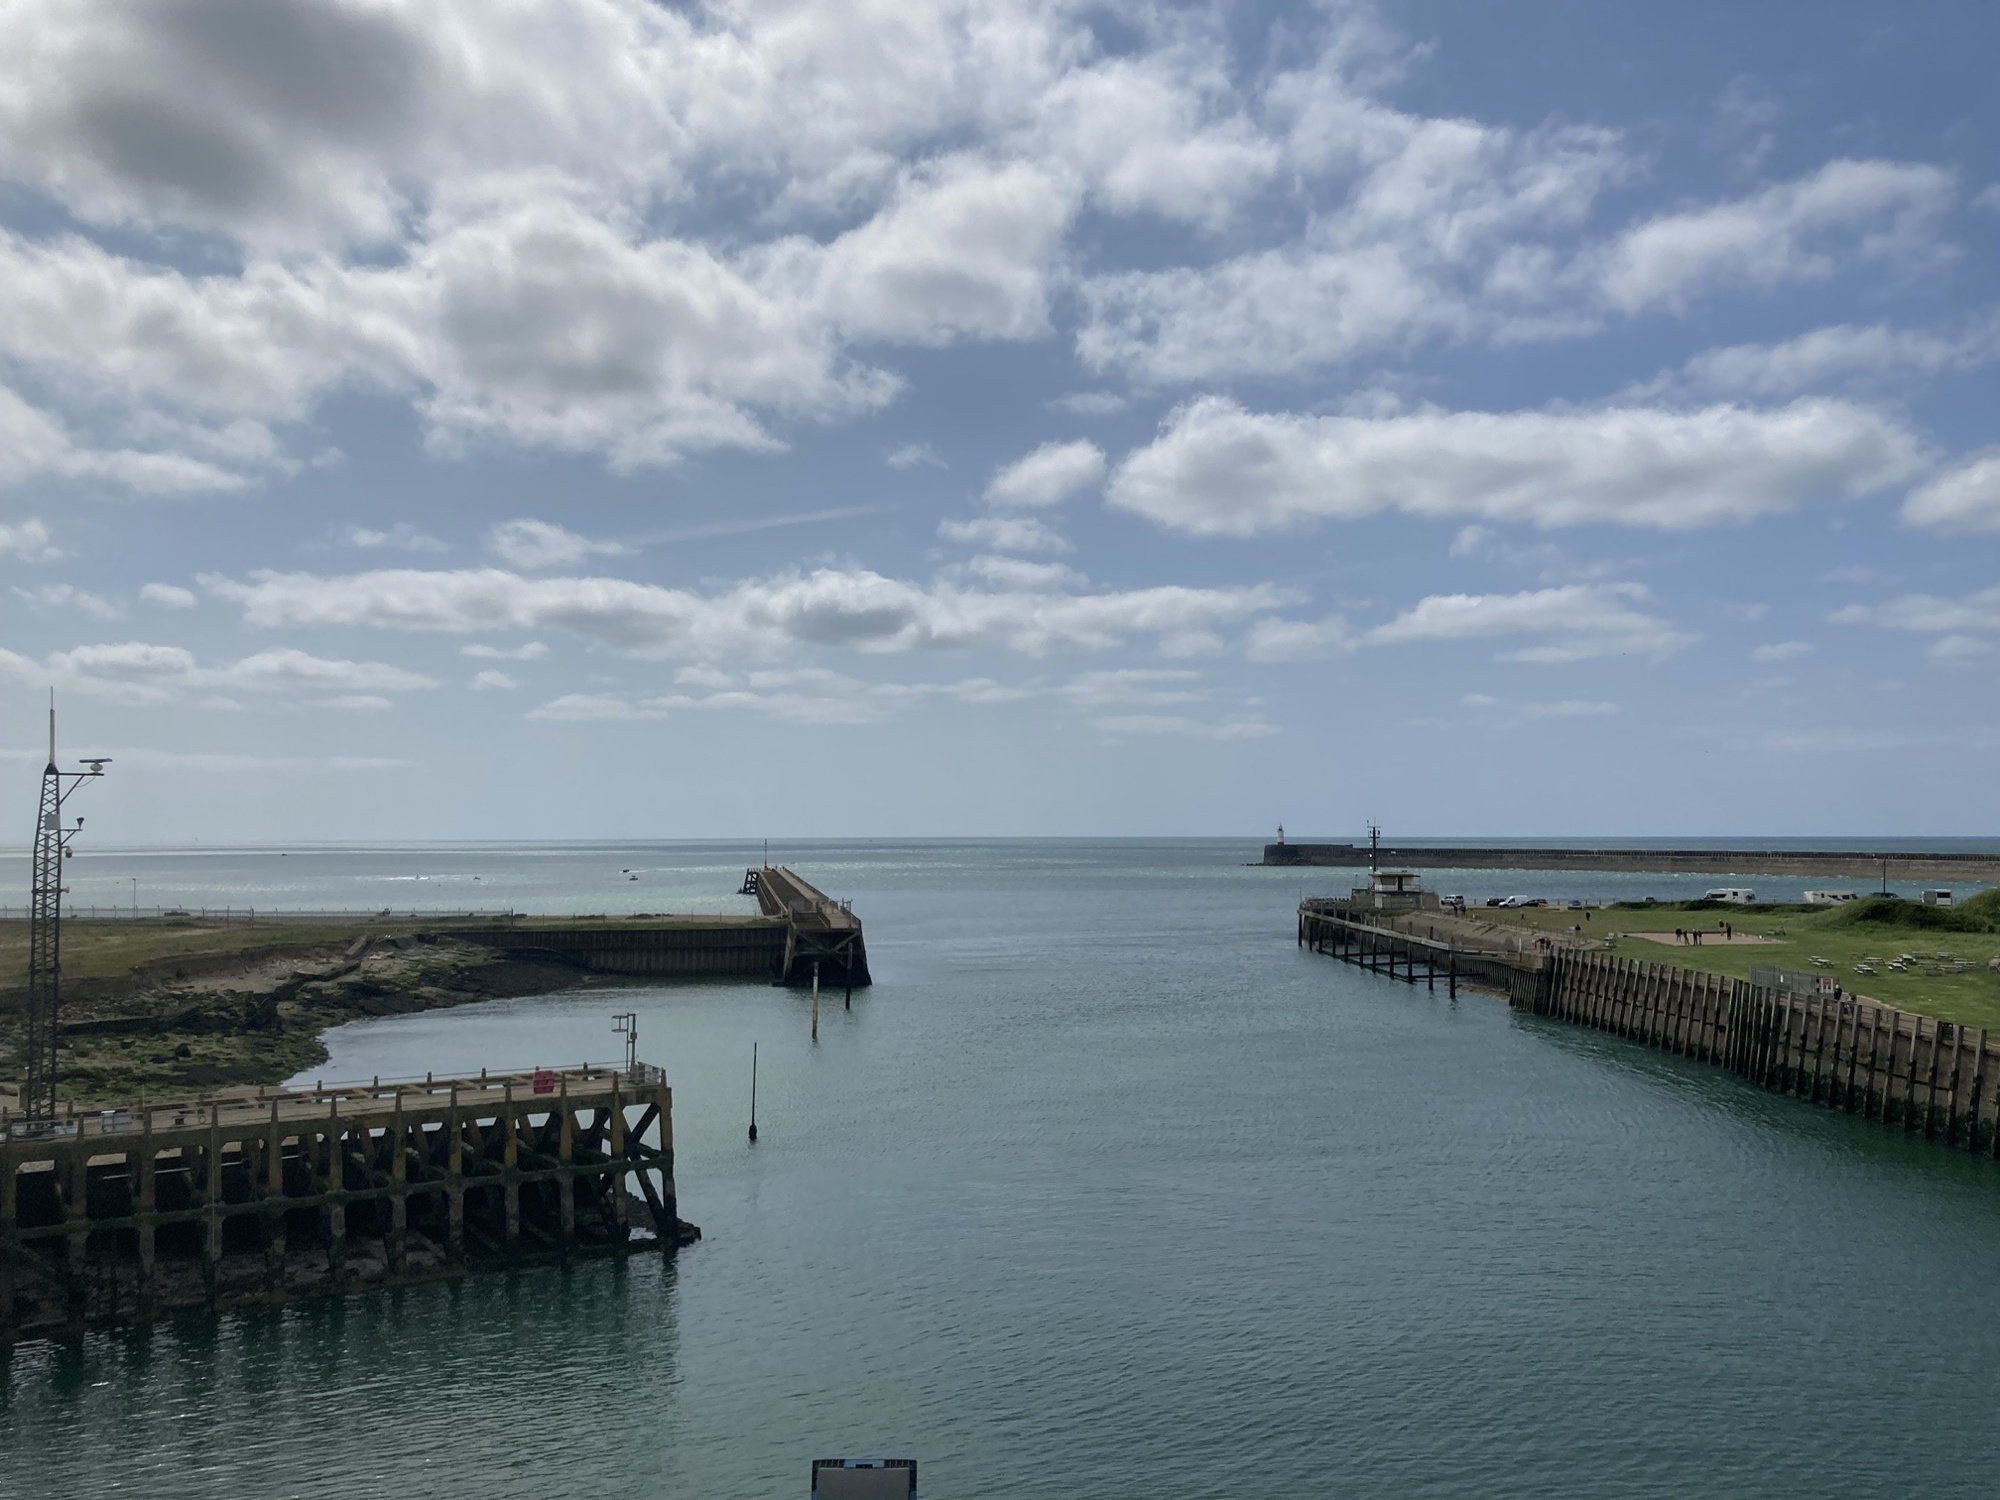 Ausblick über den Hafen von Newhaven, links ein Steg der ins Wasser hinein ragt, rechts eine runde menschengemachte Bucht, mit einem erahnbaren Leuchtturm am Ende